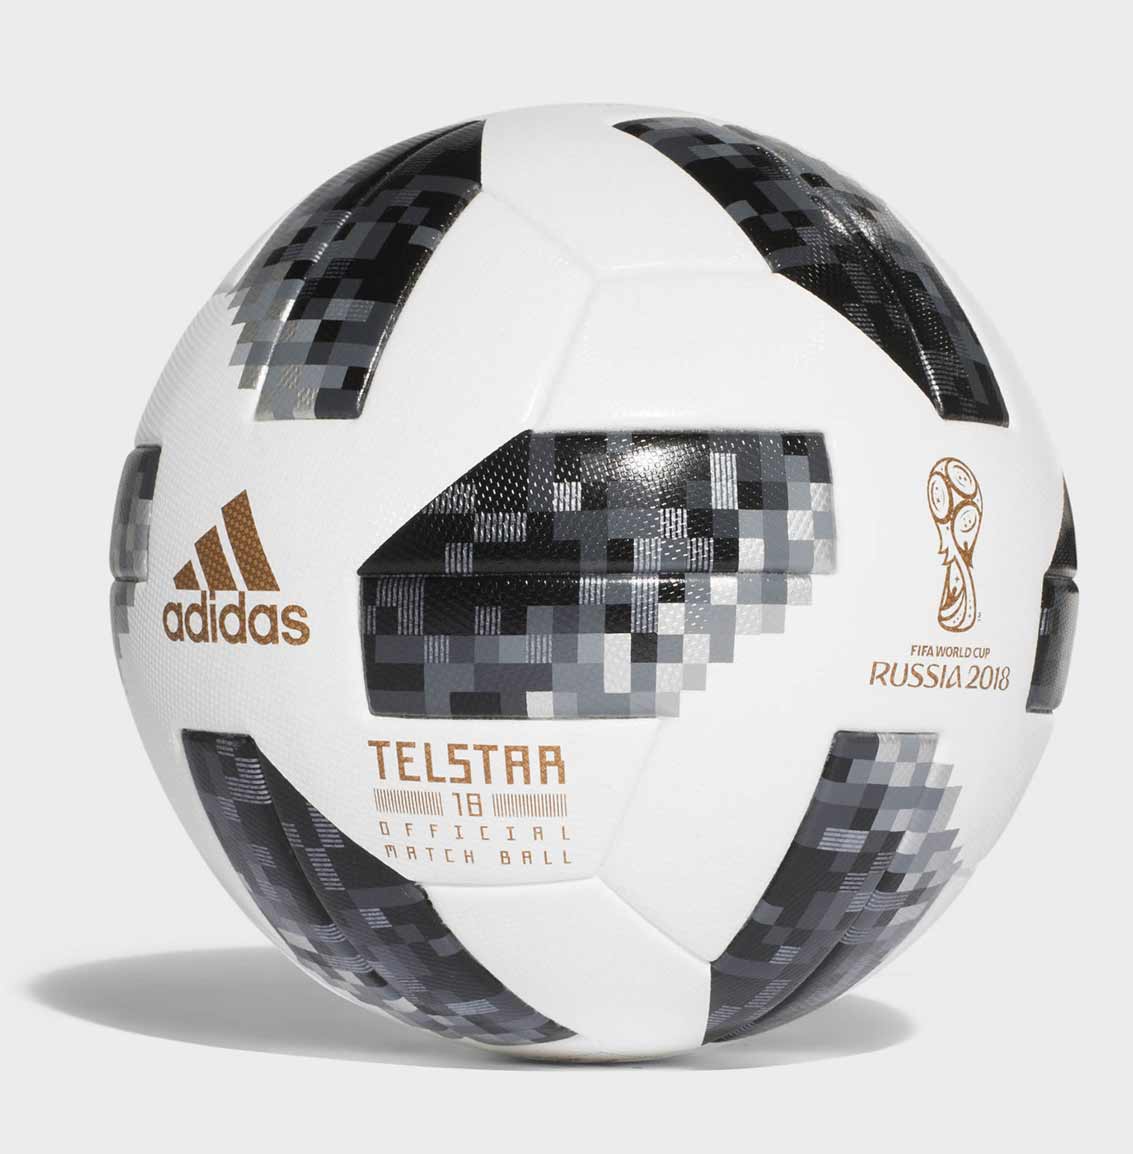 Официальный мяч Чемпионата Мира по футболу 2018 - Telstar 18